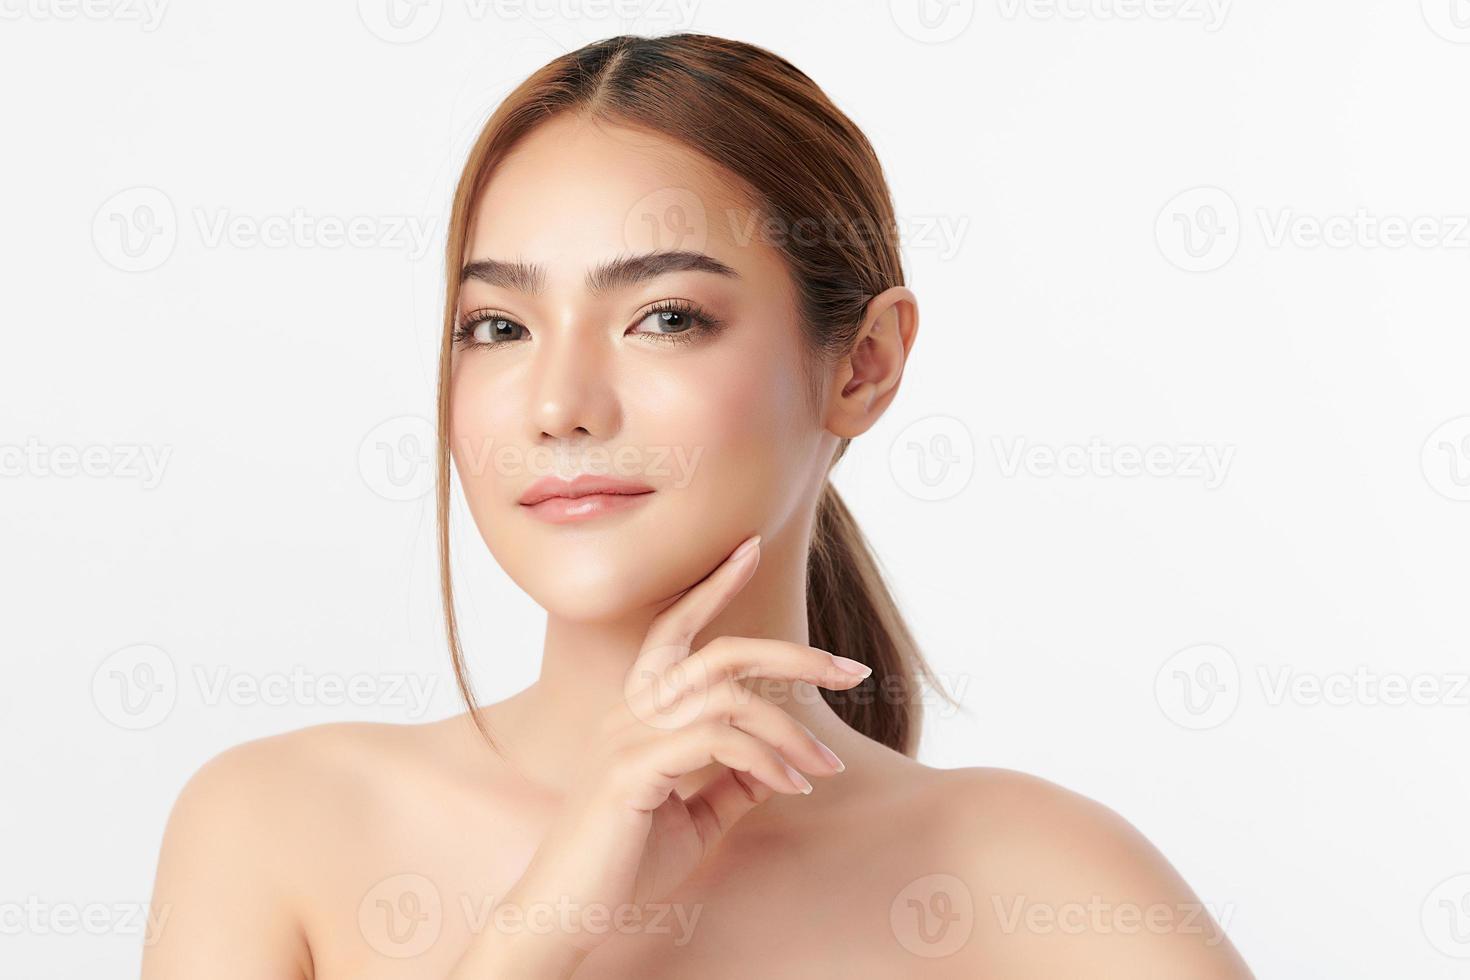 bela jovem asiática com pele limpa, fresca em fundo branco, cuidados faciais, tratamento facial, cosmetologia, beleza e spa, retrato de mulheres asiáticas. foto